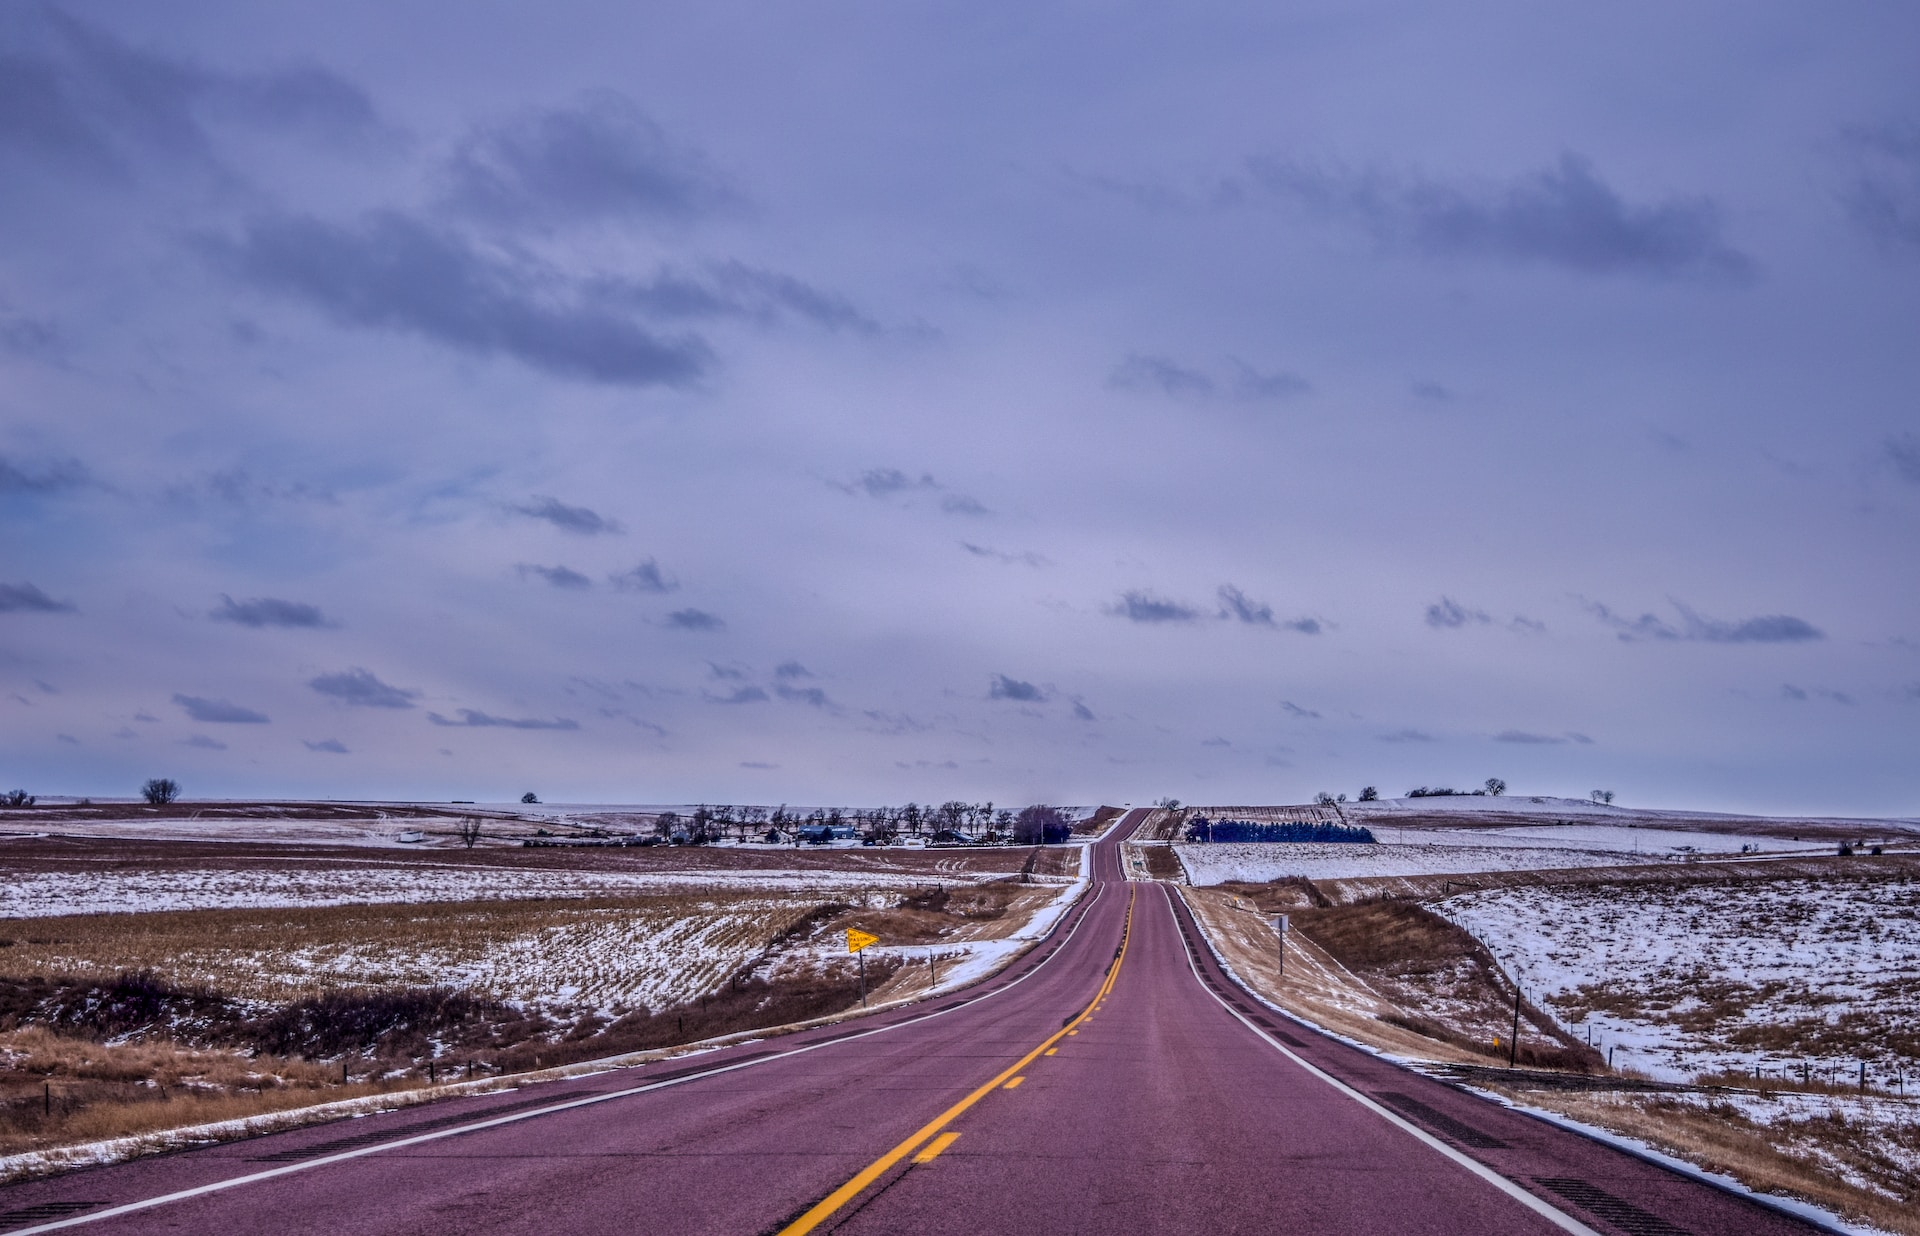 A snowy road in South Dakota.